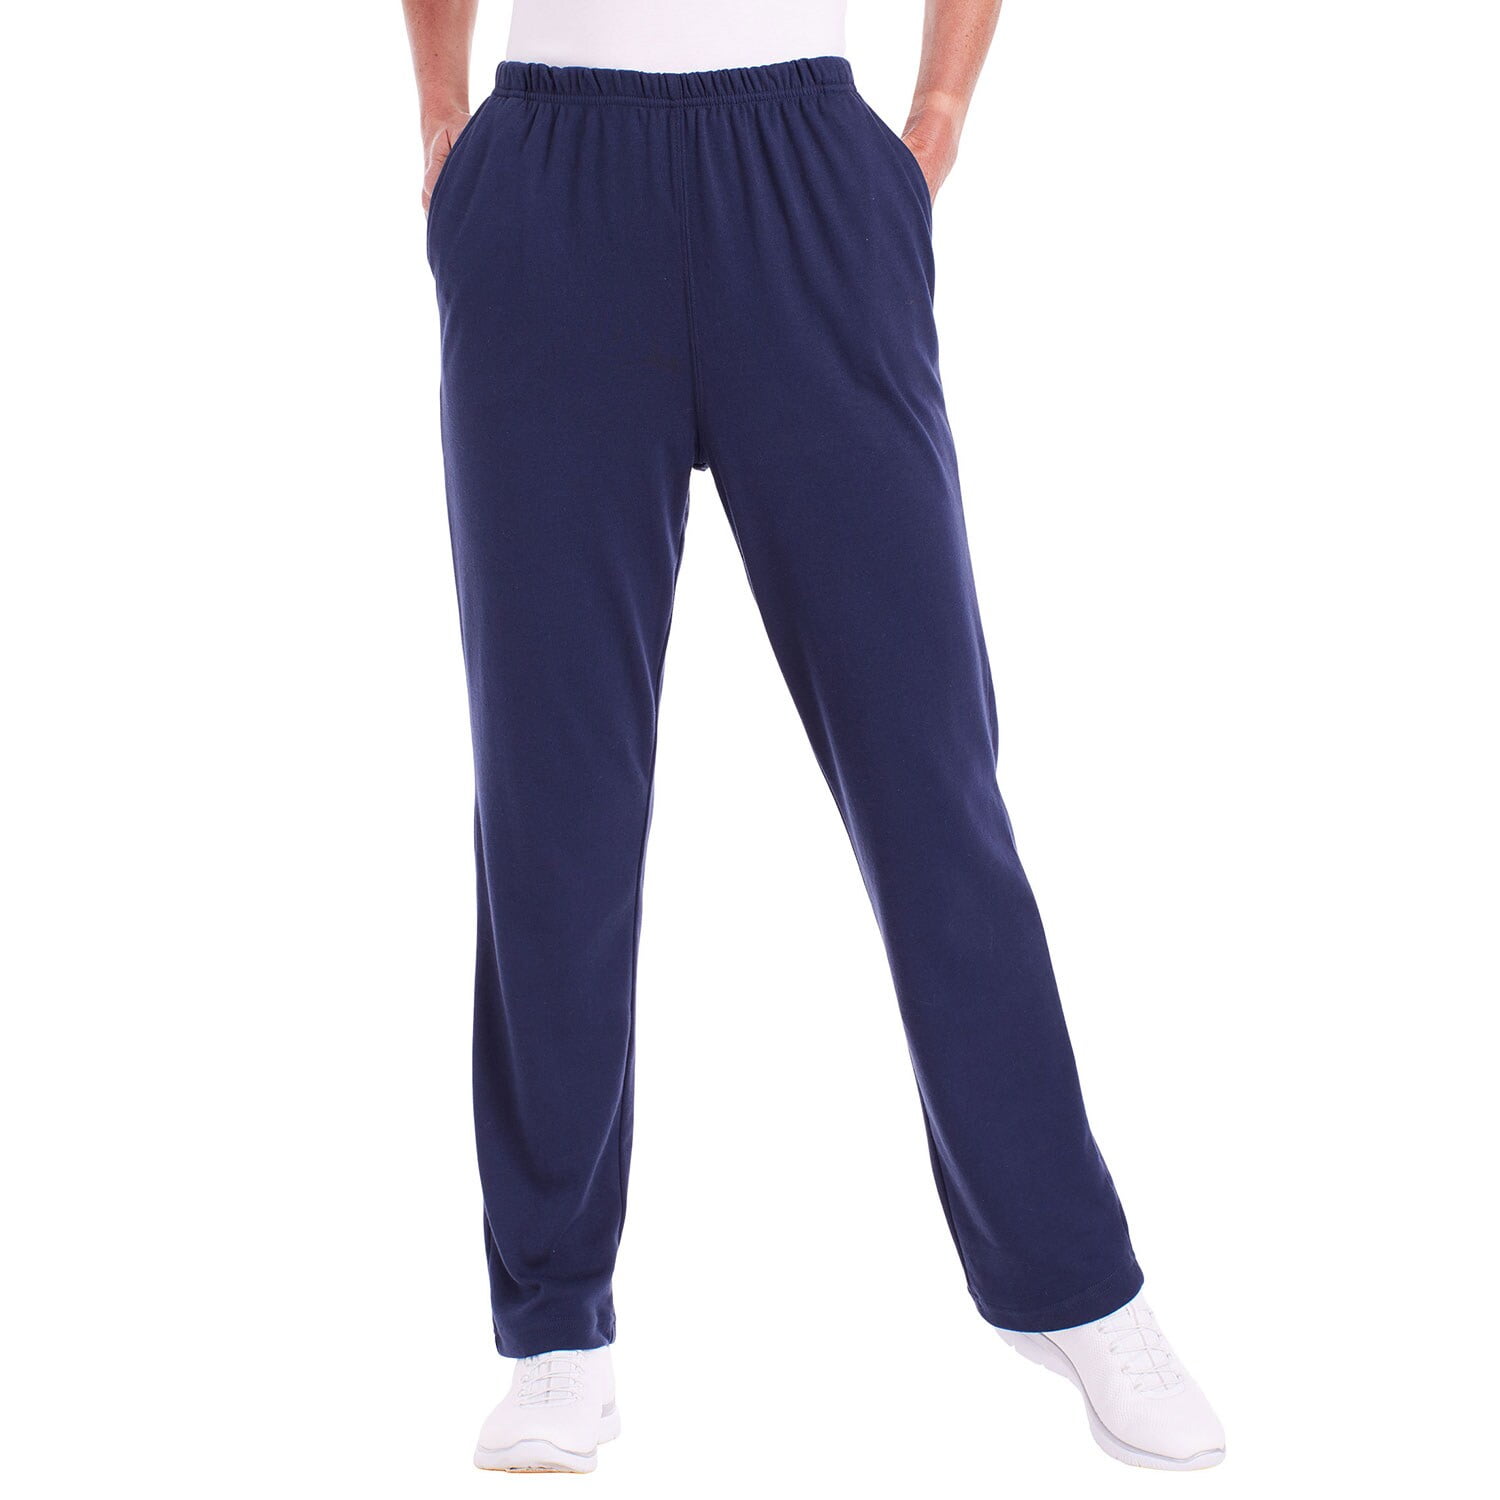 Buy Niyo Girls Women's Bell Bottom Trendy Formal Trouser Pants Retro Navy  Blue Bell Bottom for Women Girls at Amazon.in